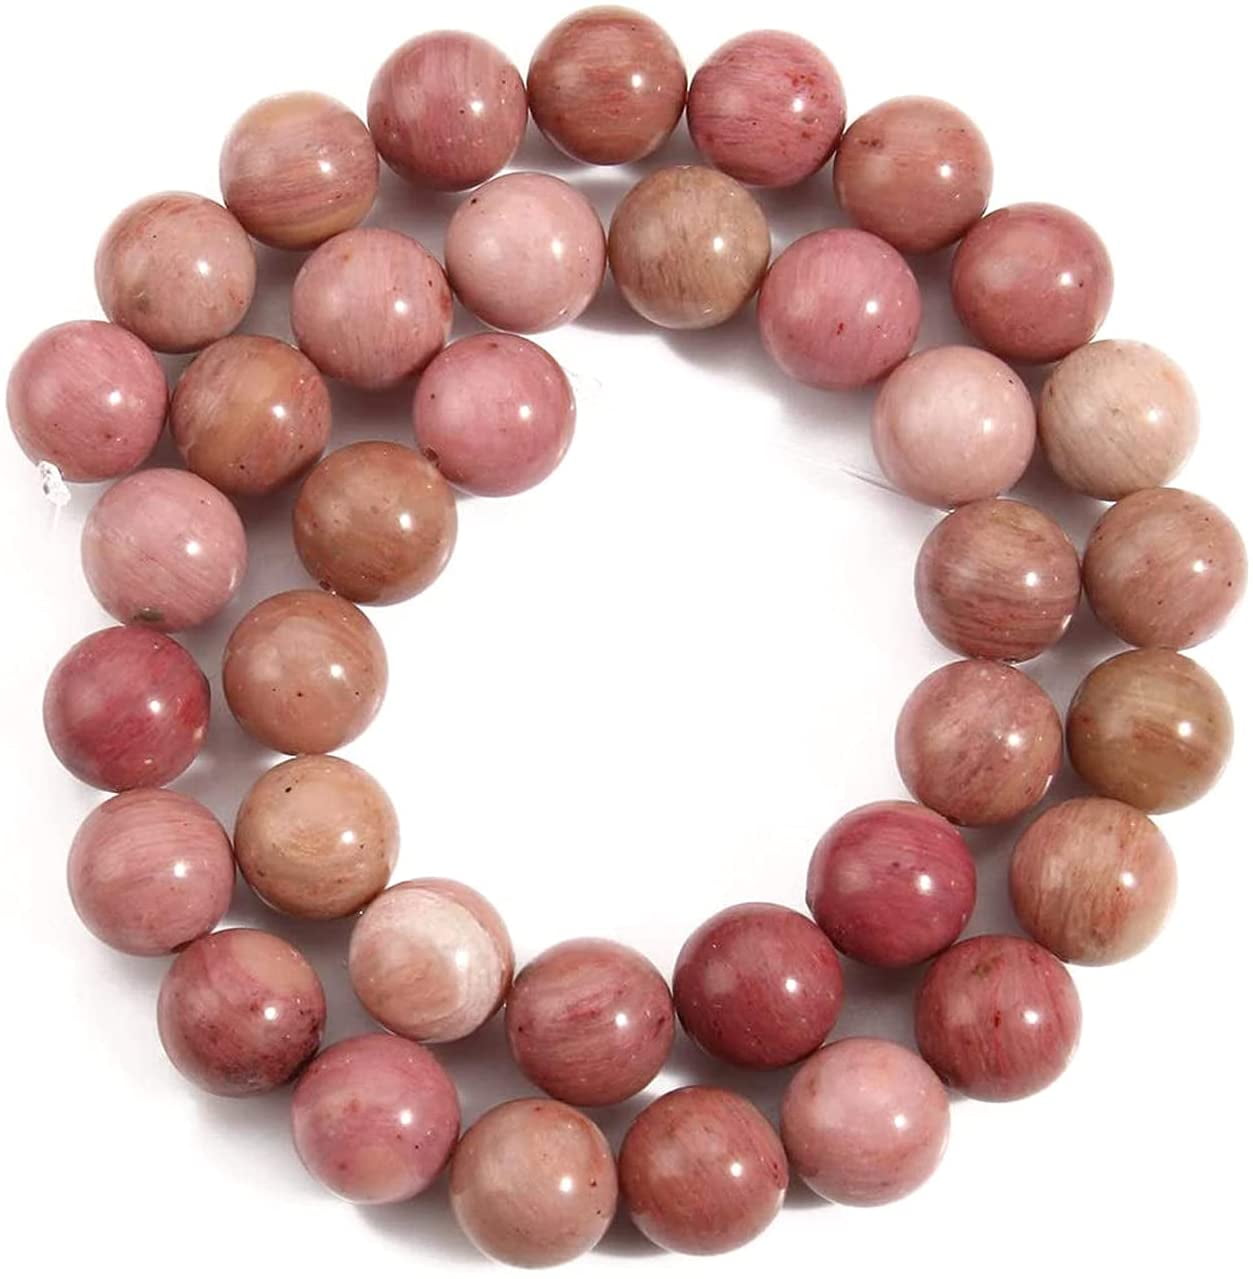 6mm Pink Round Rhodochrosite Gemstone Loose Beads 15" Strand 